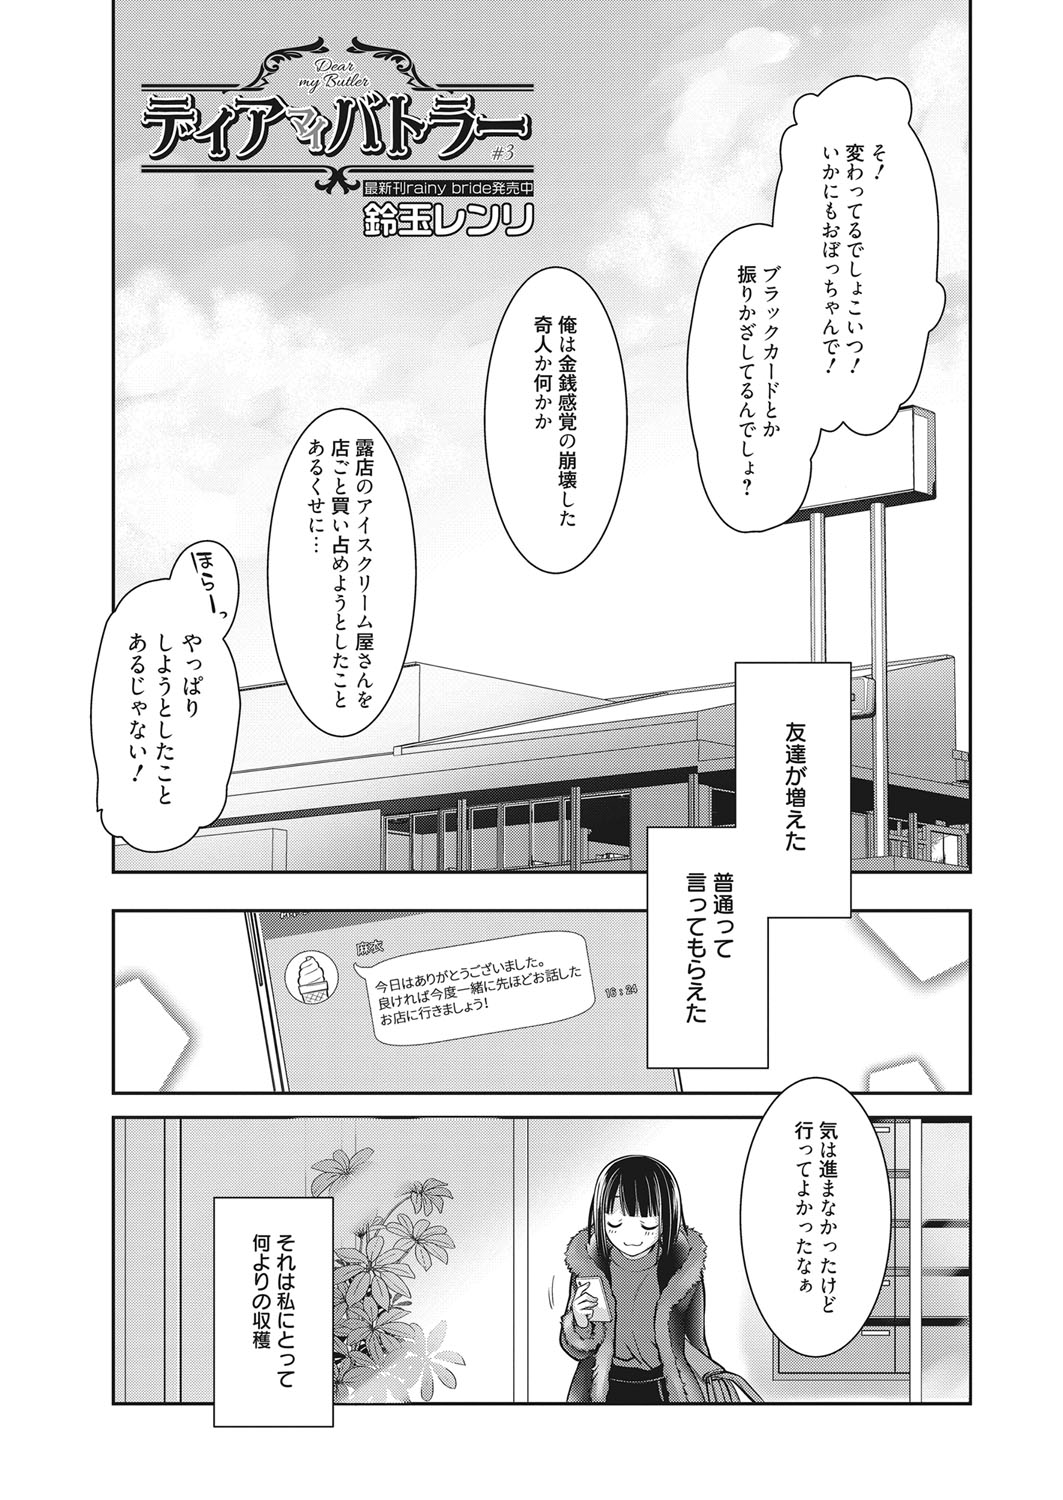 web 漫画ばんがいち Vol.17